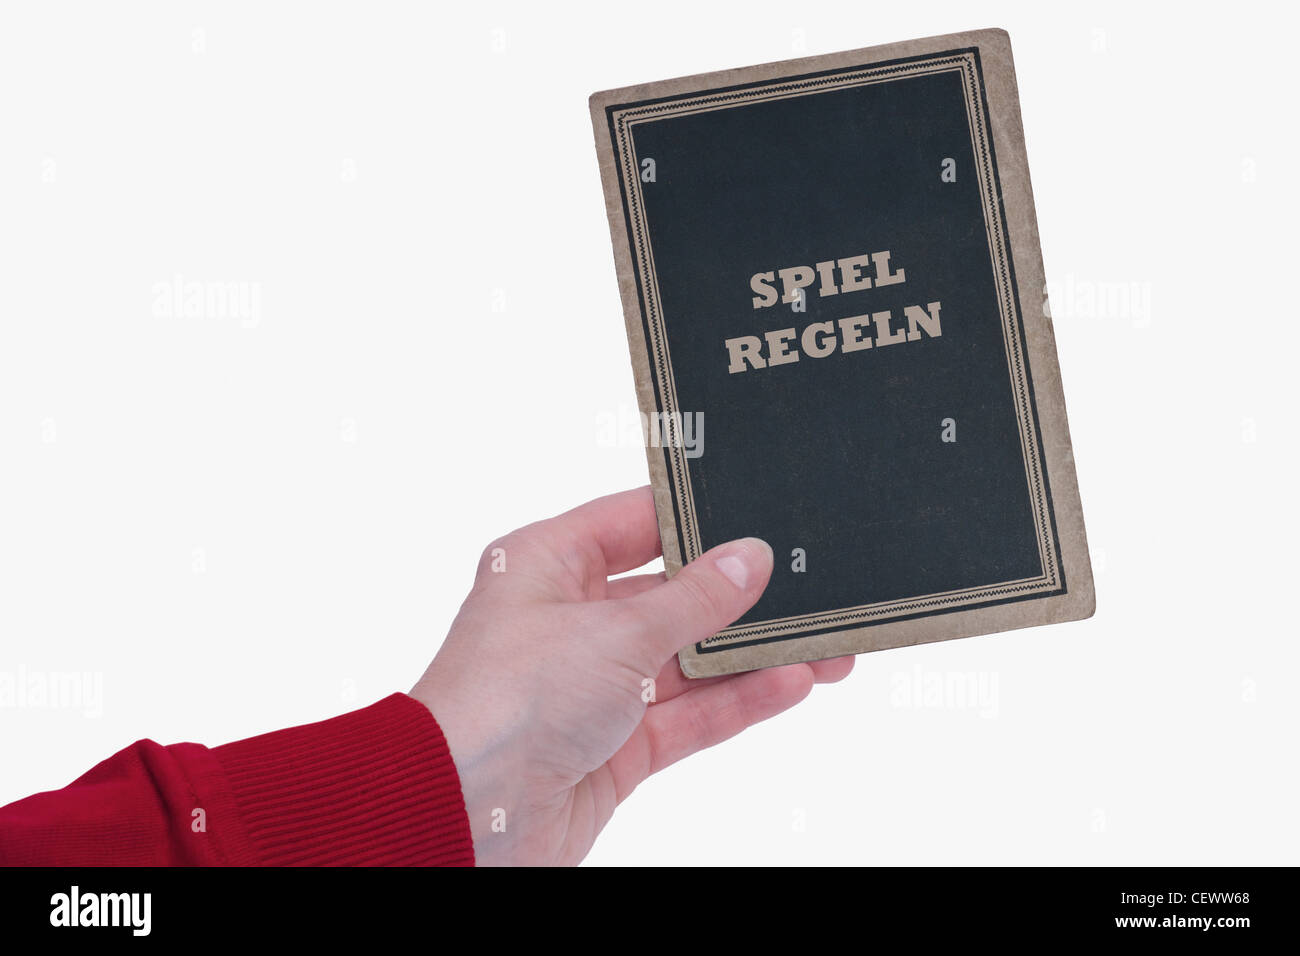 Ein Buch mit der Aufschrift 'Spielregeln' wird in der gehalten mano | un libro con il titolo tedesco di 'Spielregeln' è tenuto in mano Foto Stock